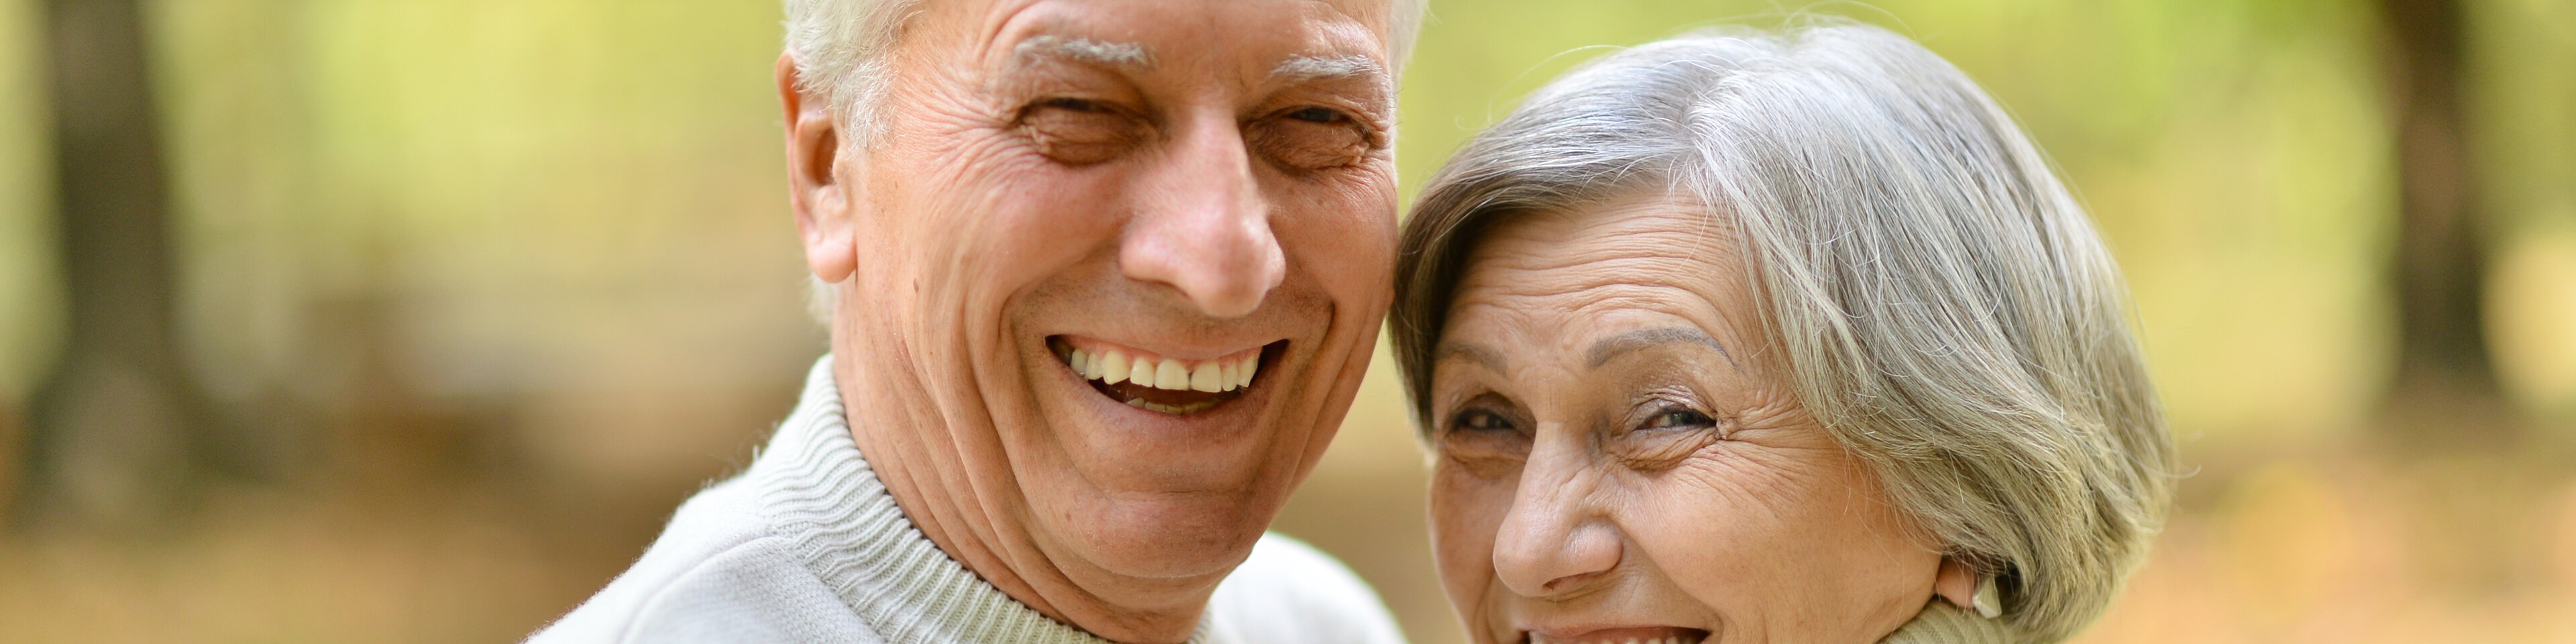 Älterer Mann und ältere Frau lächeln in die Kamera | © aletia 2011 - Fotolia